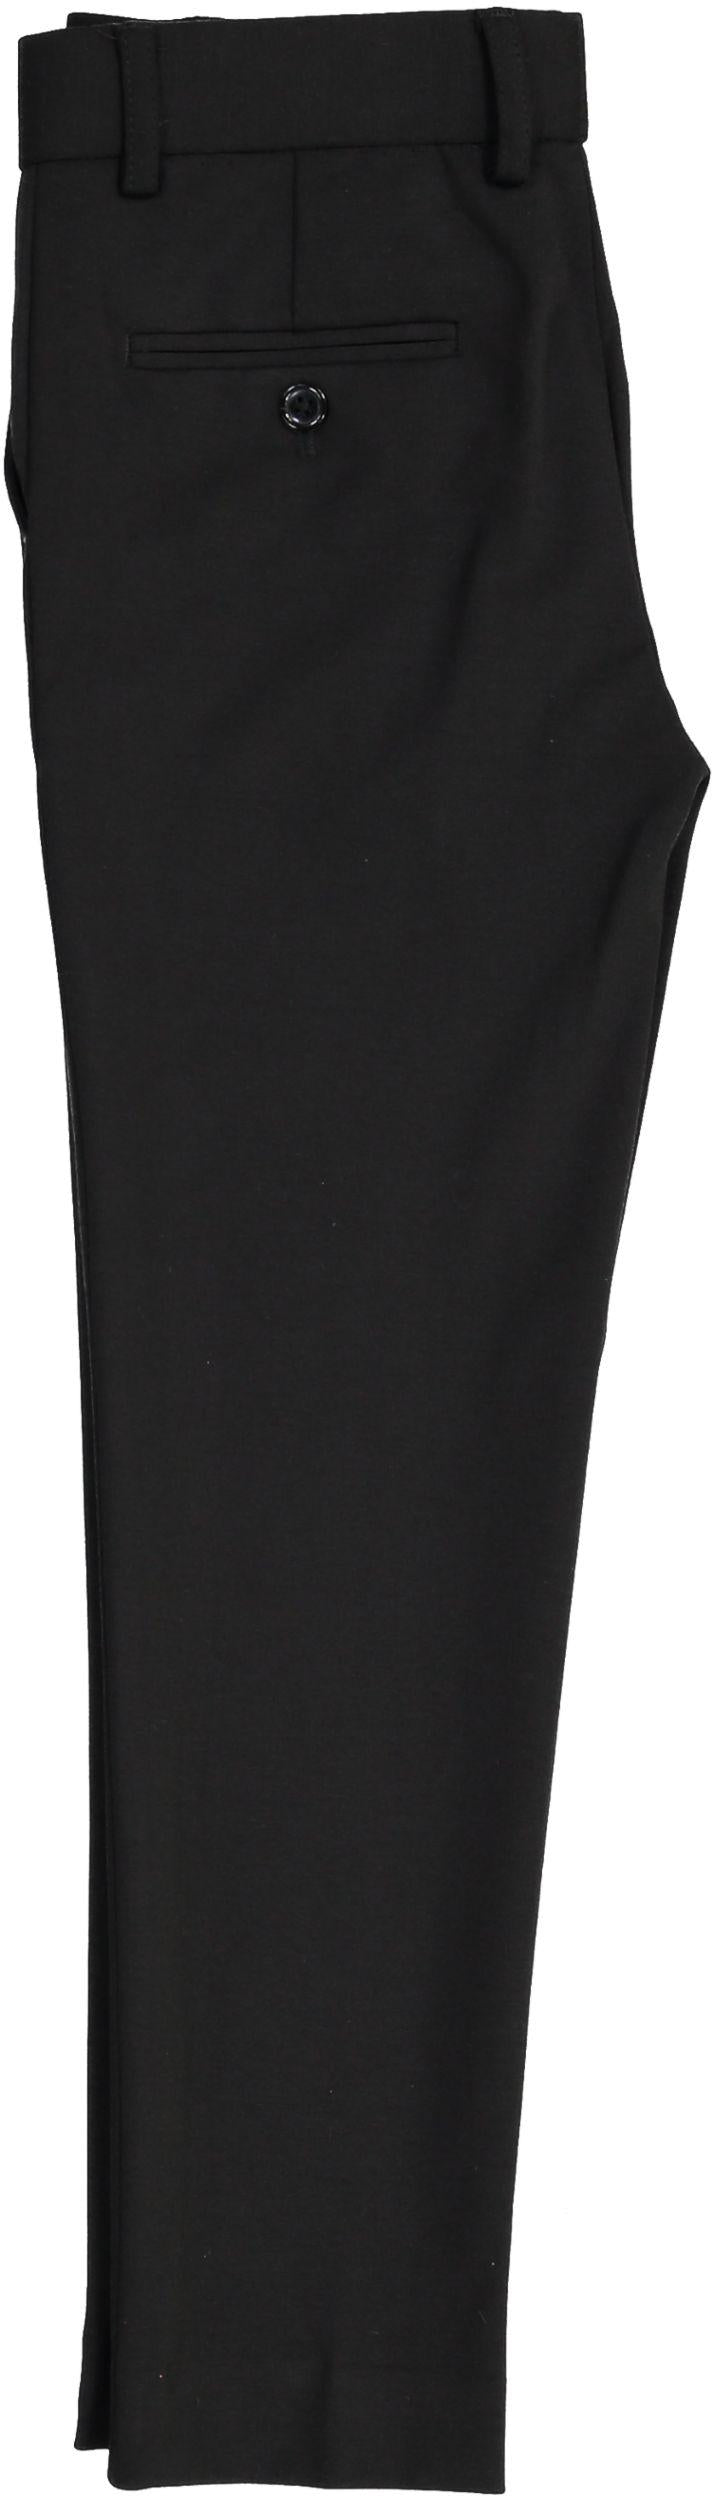 T.O. Collection Boys Soho Stretch Knit Dress Pants - 9131 – ShirtStop